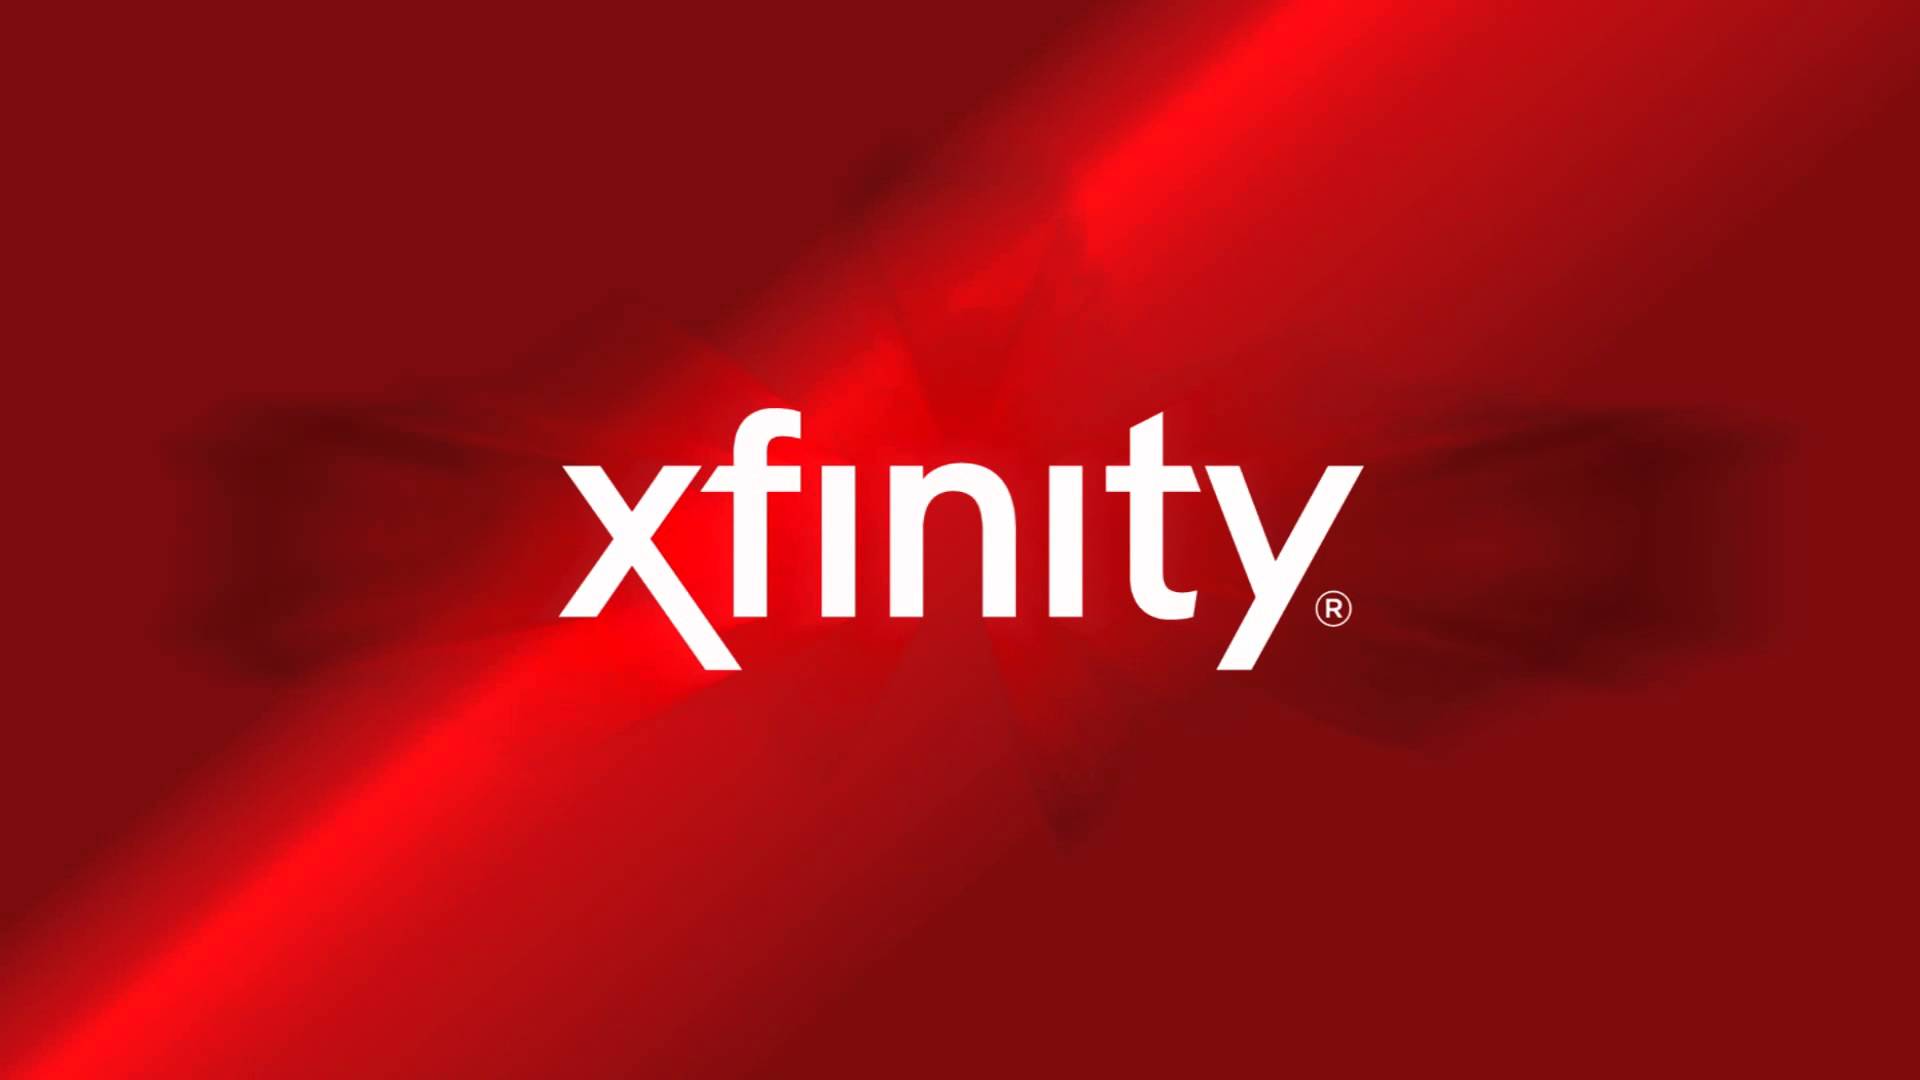 XFINITY Humble's Logo